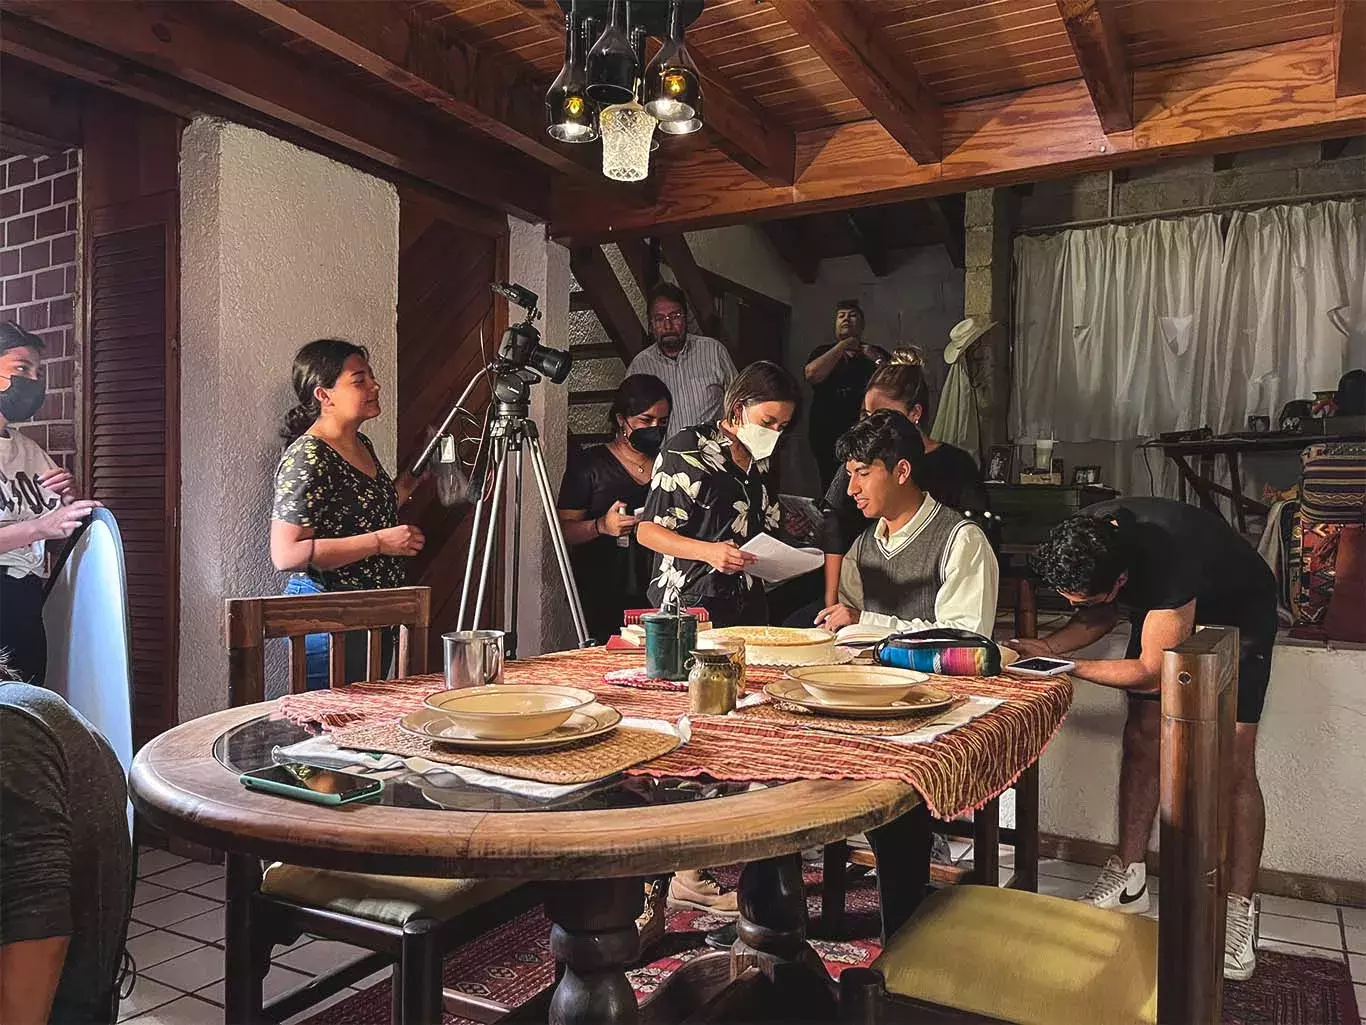 Estudiantes del Tec Campus Querétaro culminaron con éxito un mediometraje 